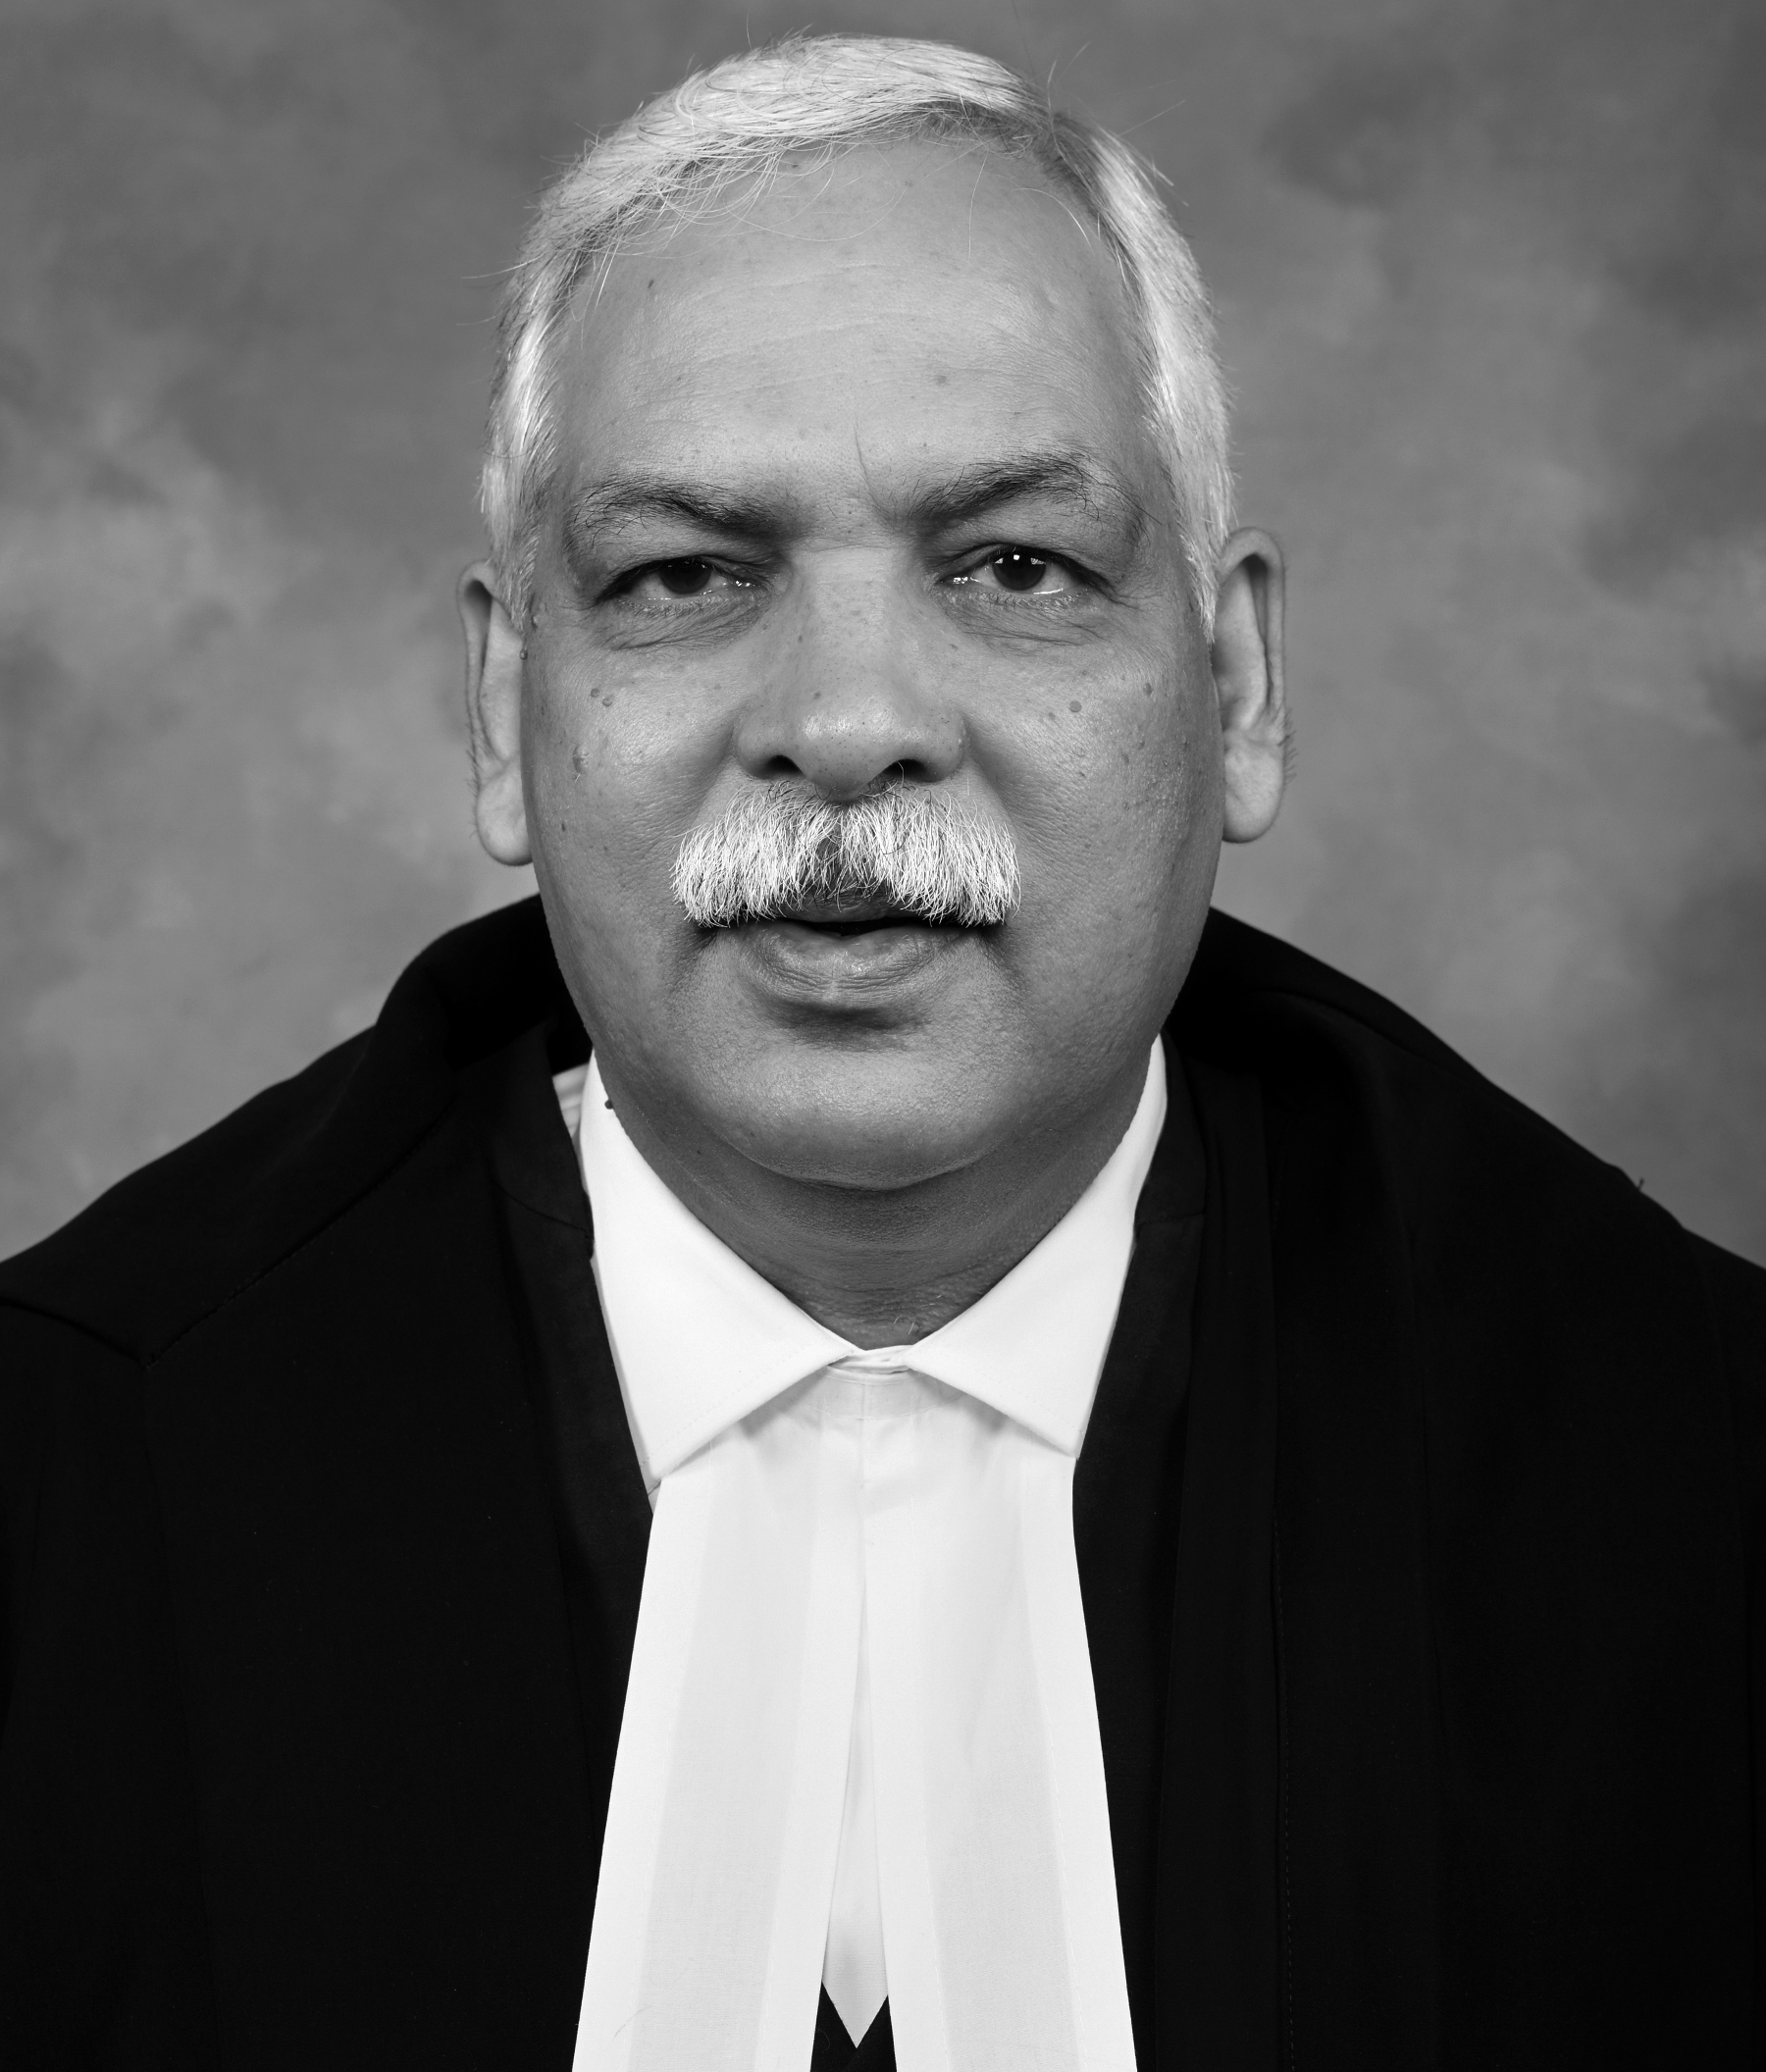 श्री. डी. के. उपाध्याय, सन्माननीय मुख्य न्यायमुर्ती उच्च न्यायालय मुंबई.